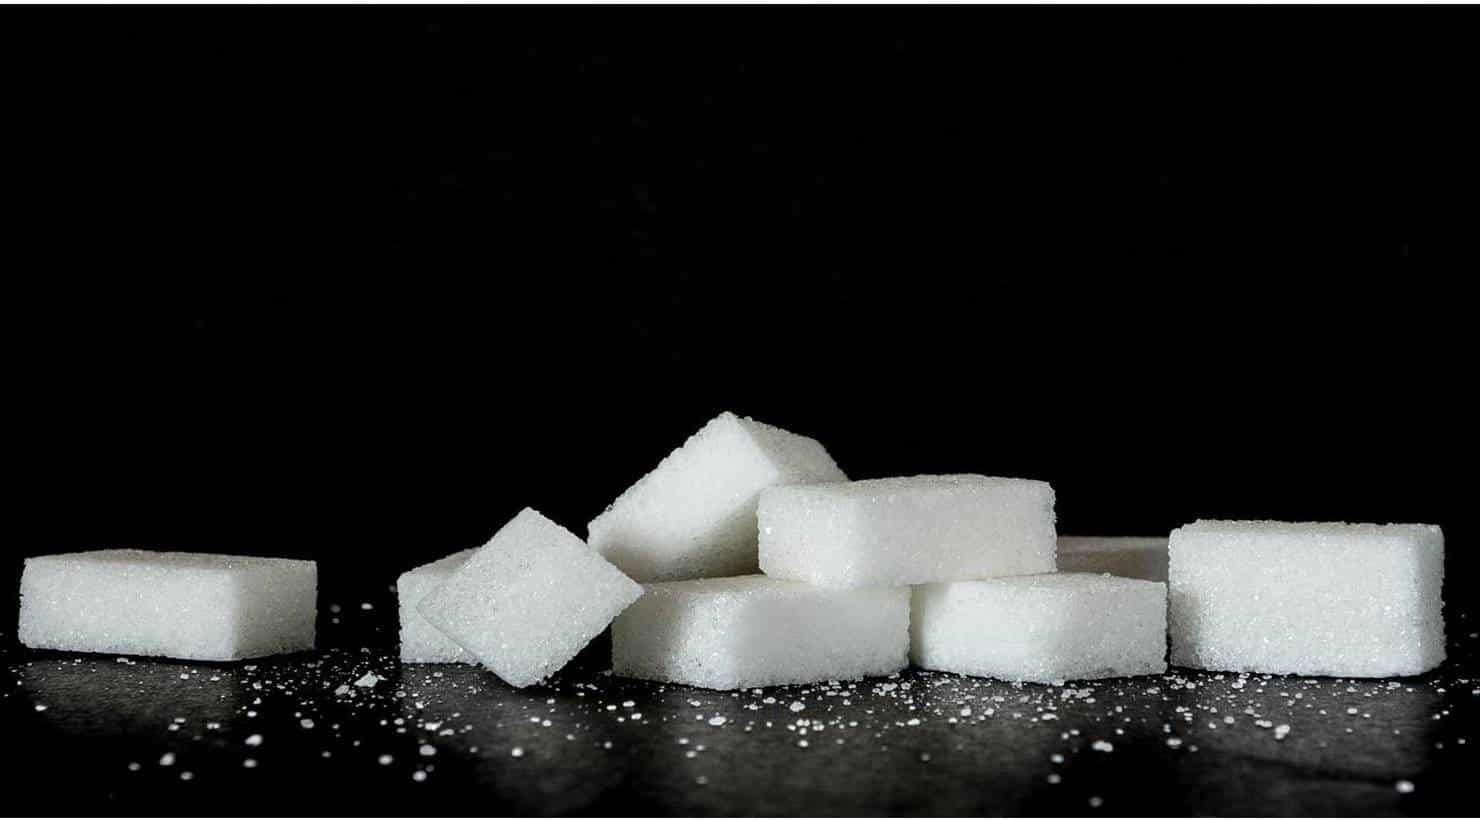 Descubra 5 usos secretos do açúcar que vão te surpreender